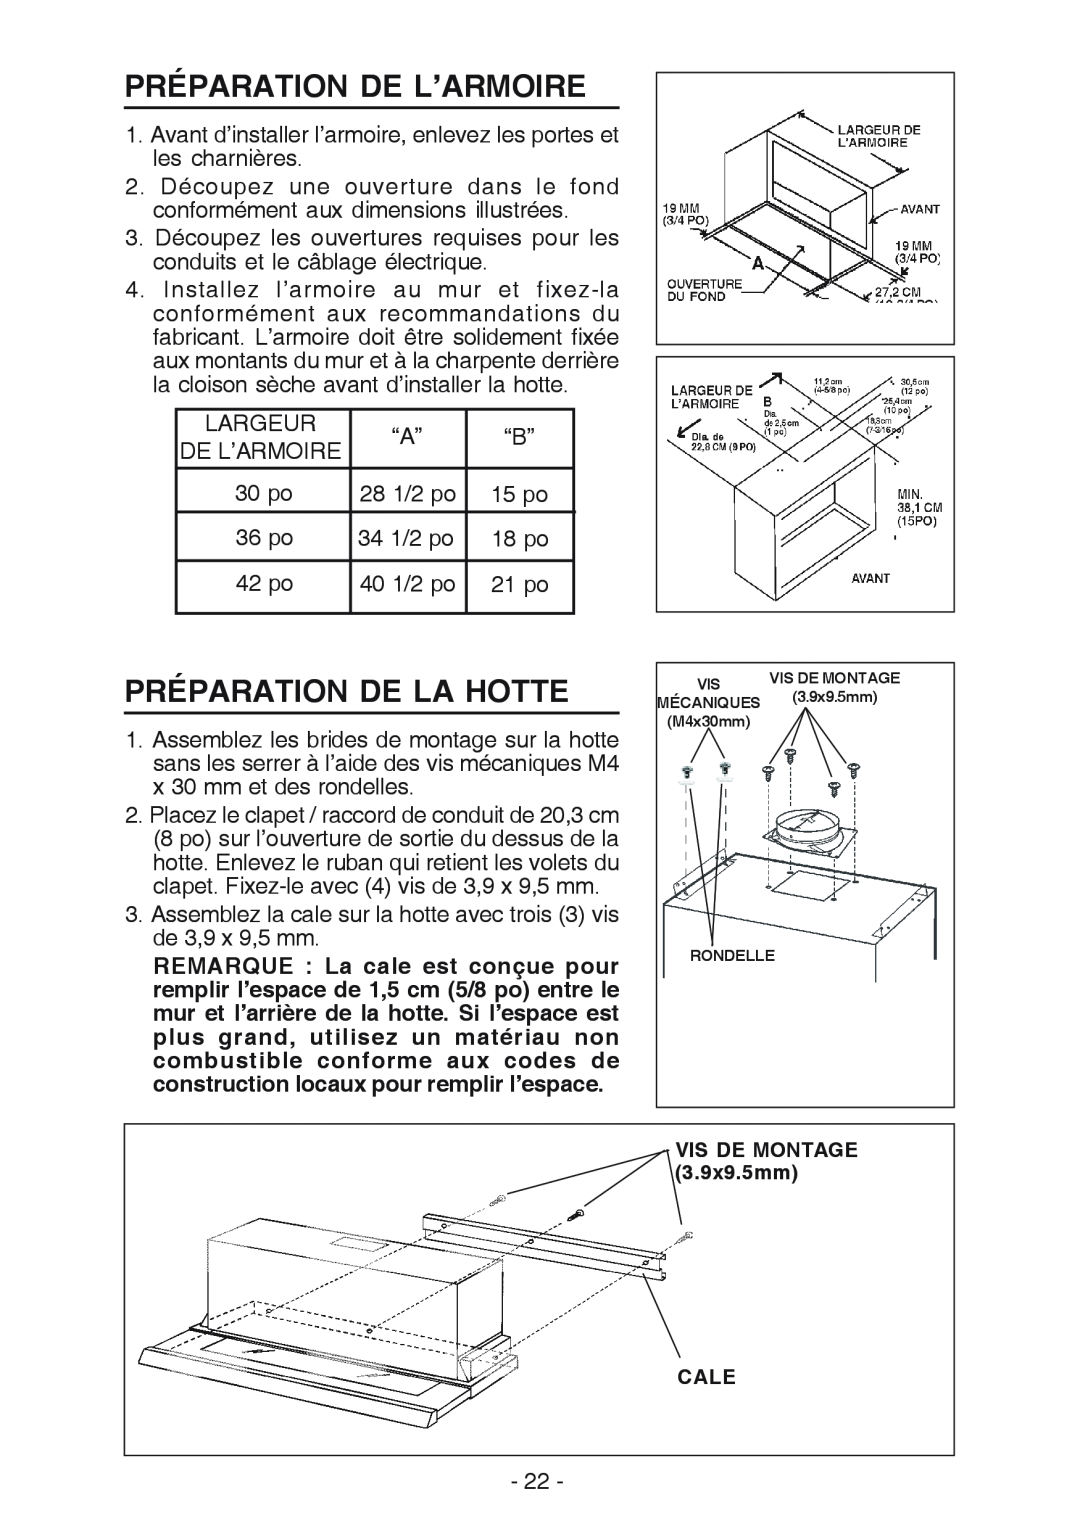 Best U102E manual Préparation De L’Armoire, Préparation De La Hotte, VIS DE MONTAGE 3.9x9.5mm CALE 